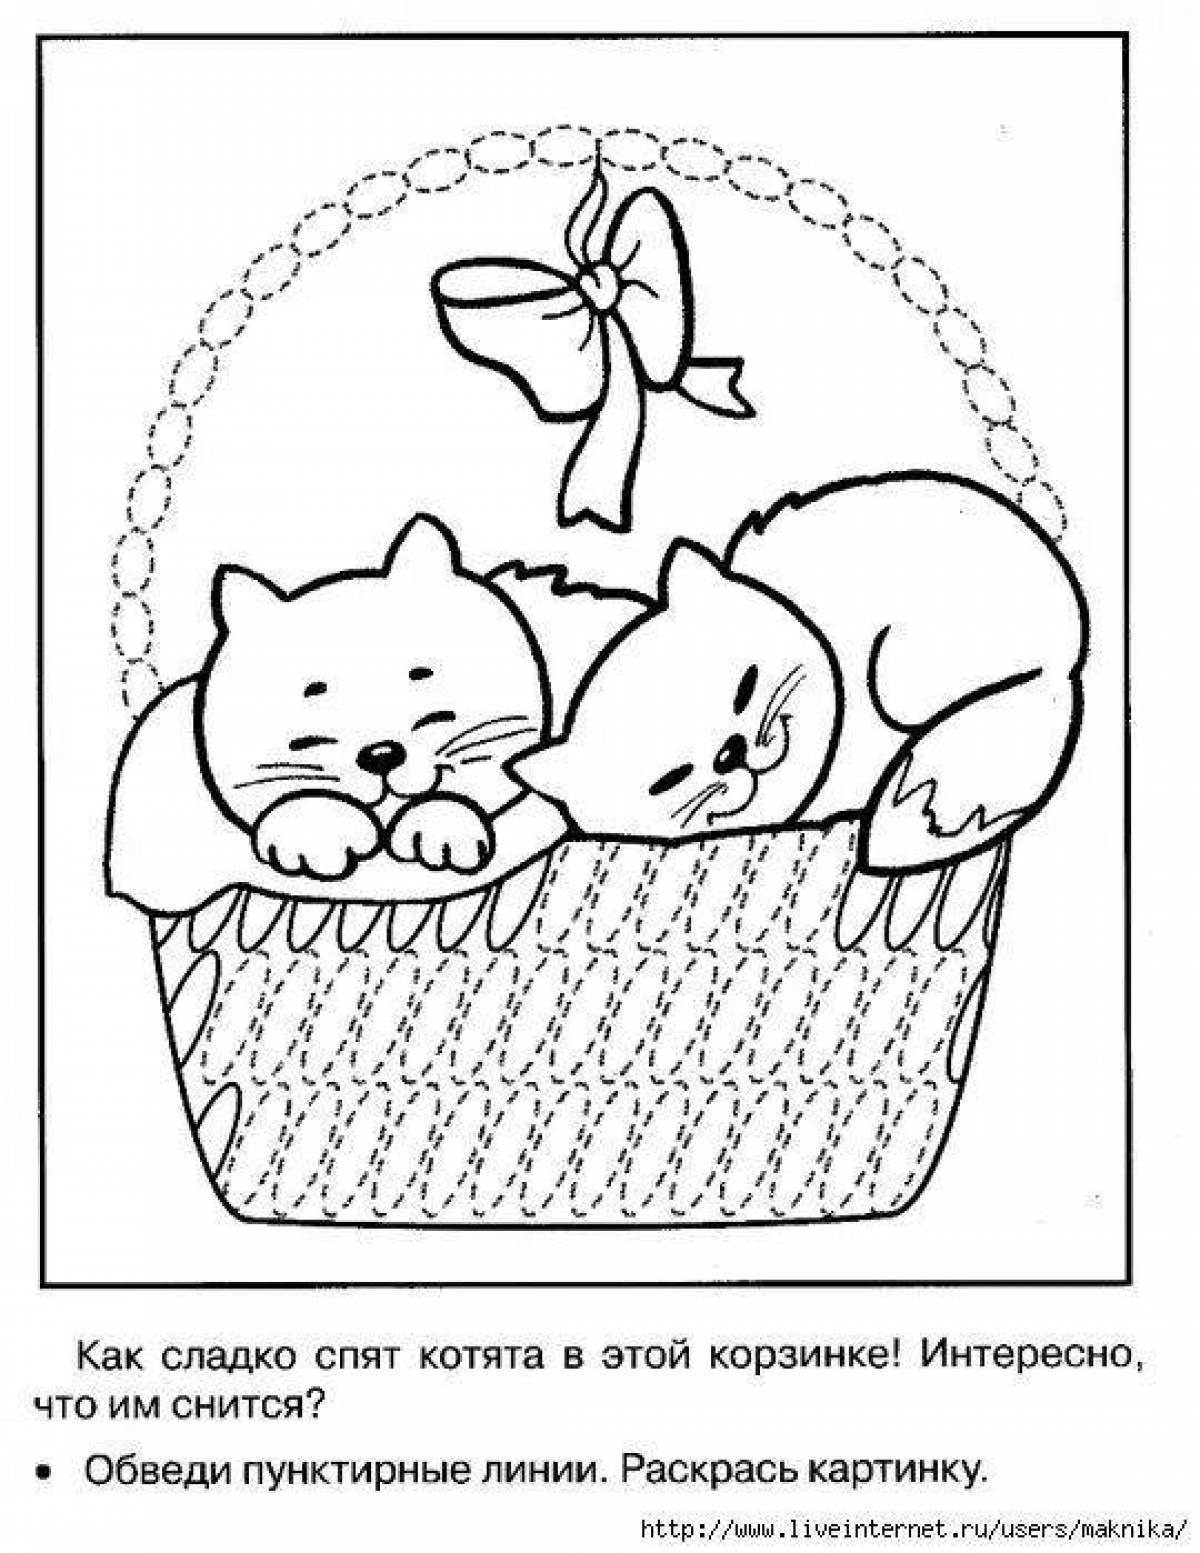 Радостные котята в корзине